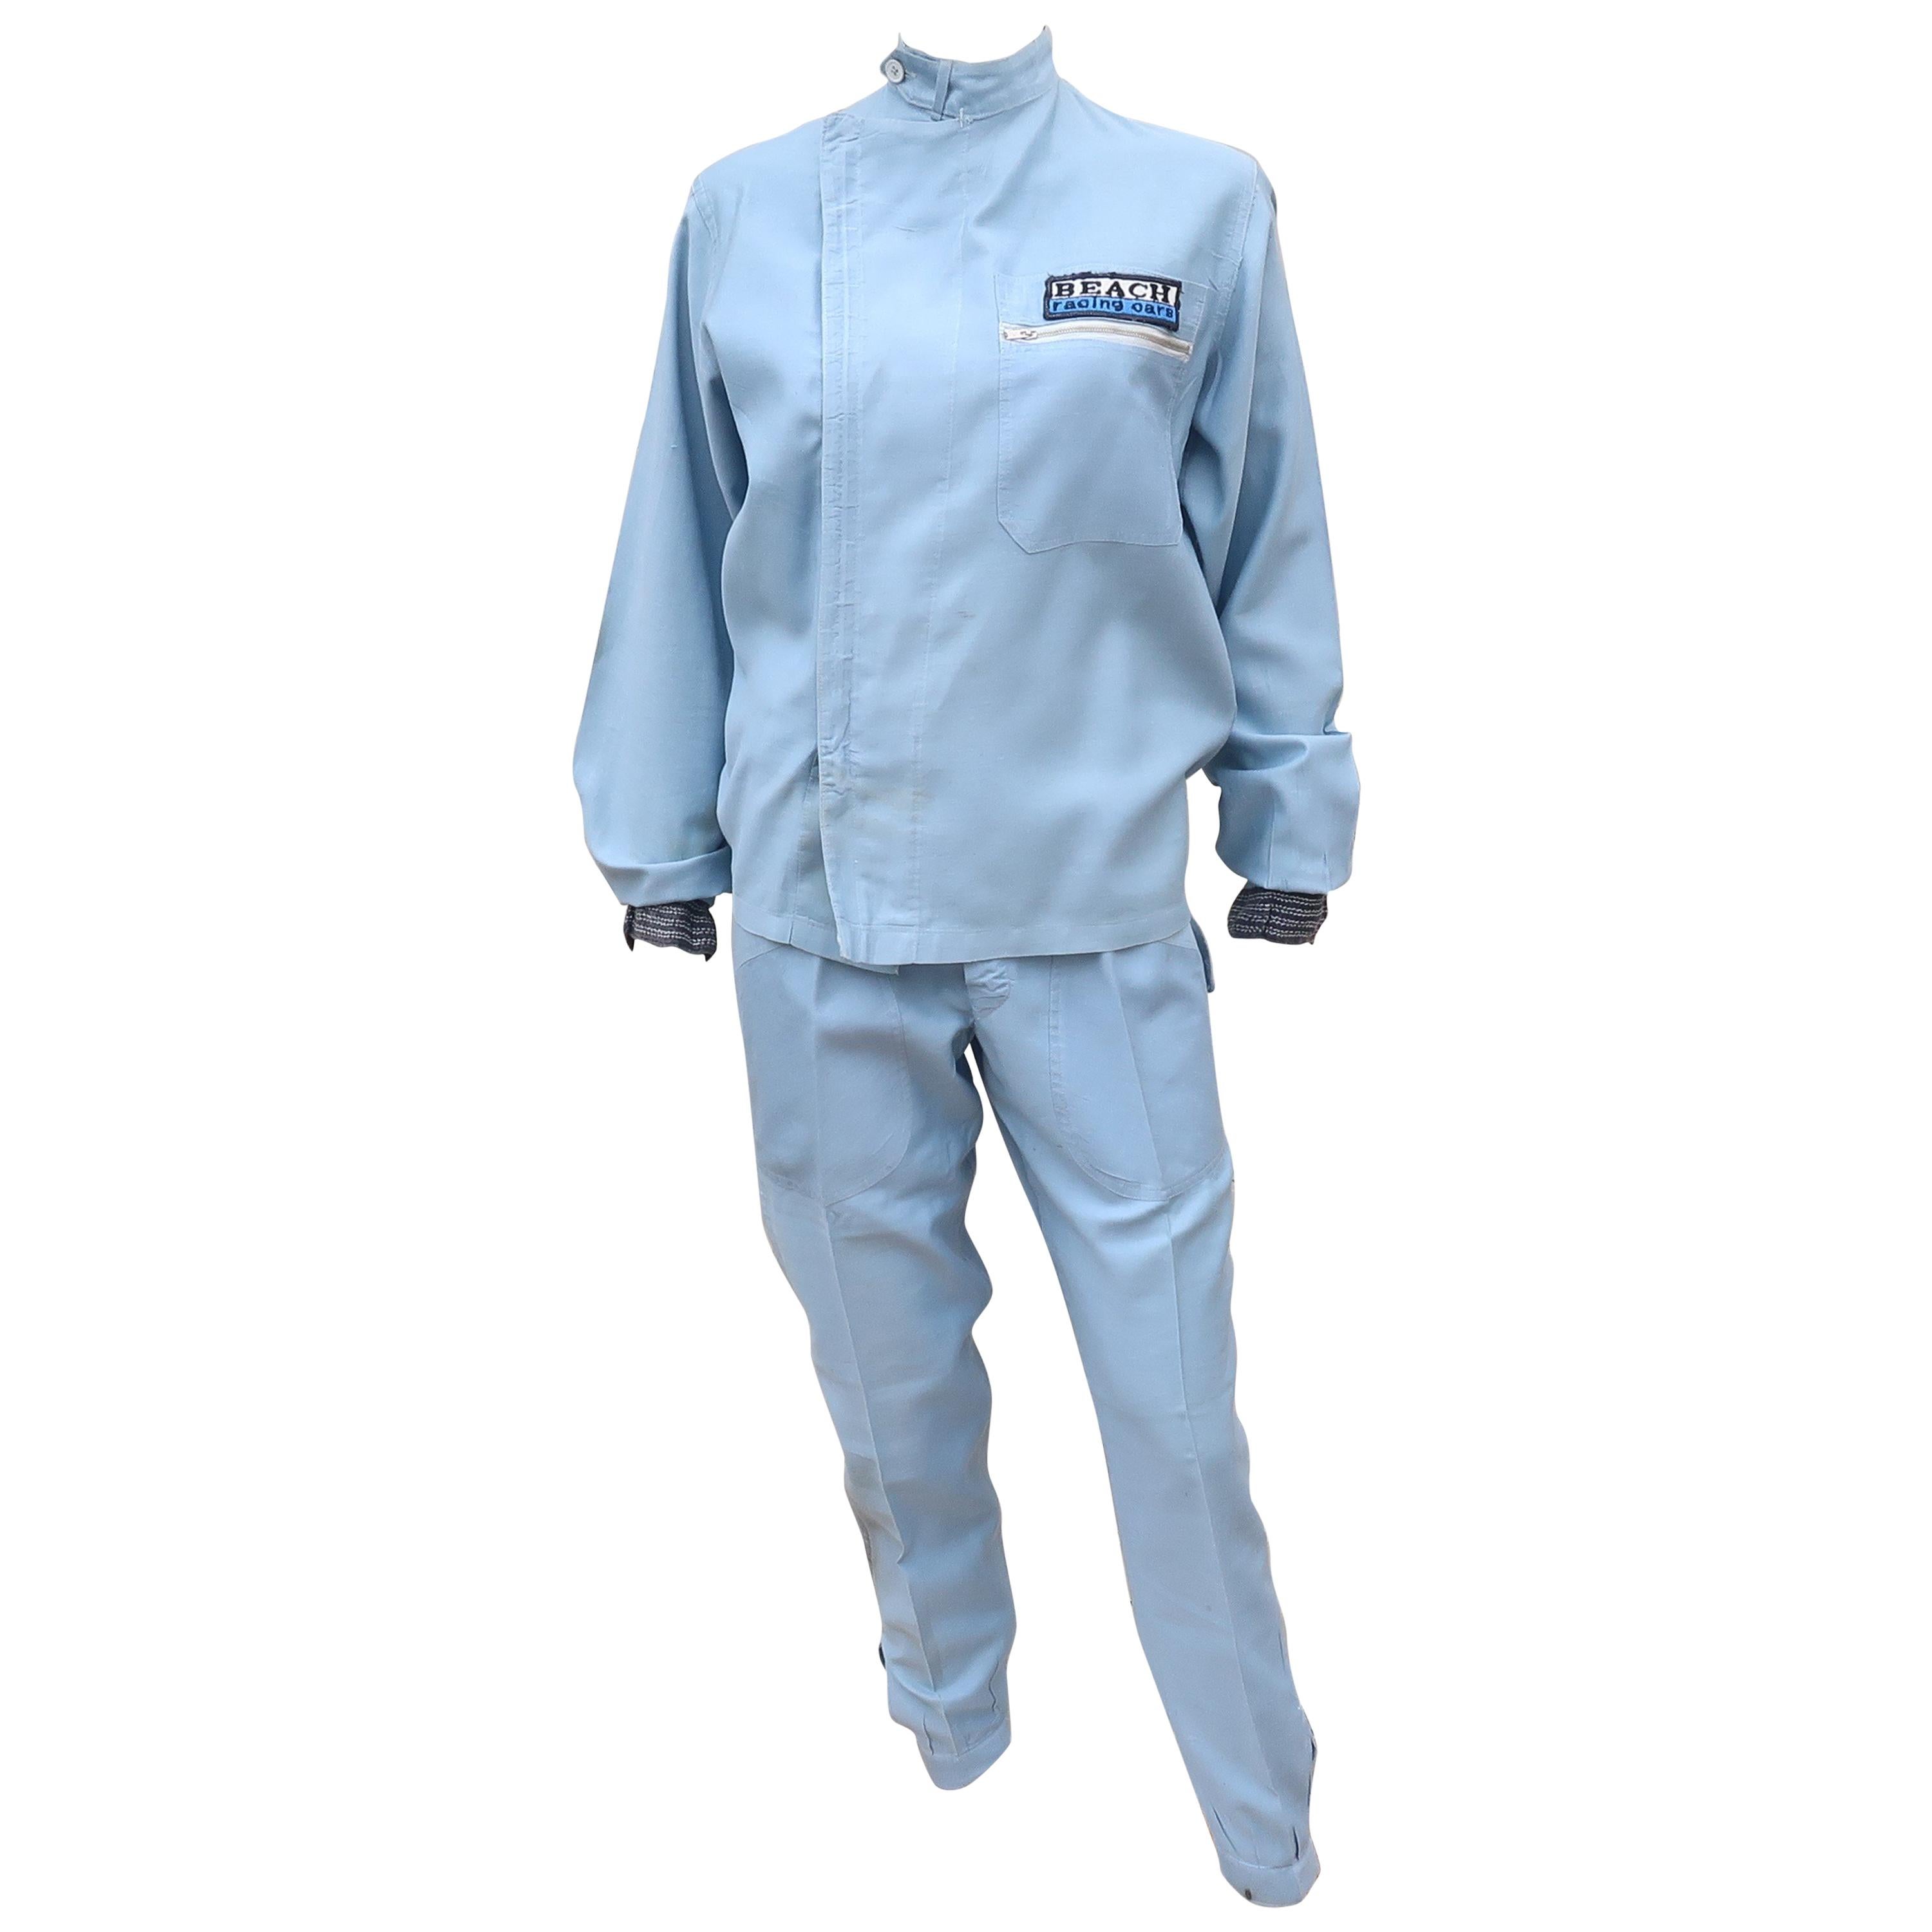 Authentic 1960’s Auto Racing Uniform Suit